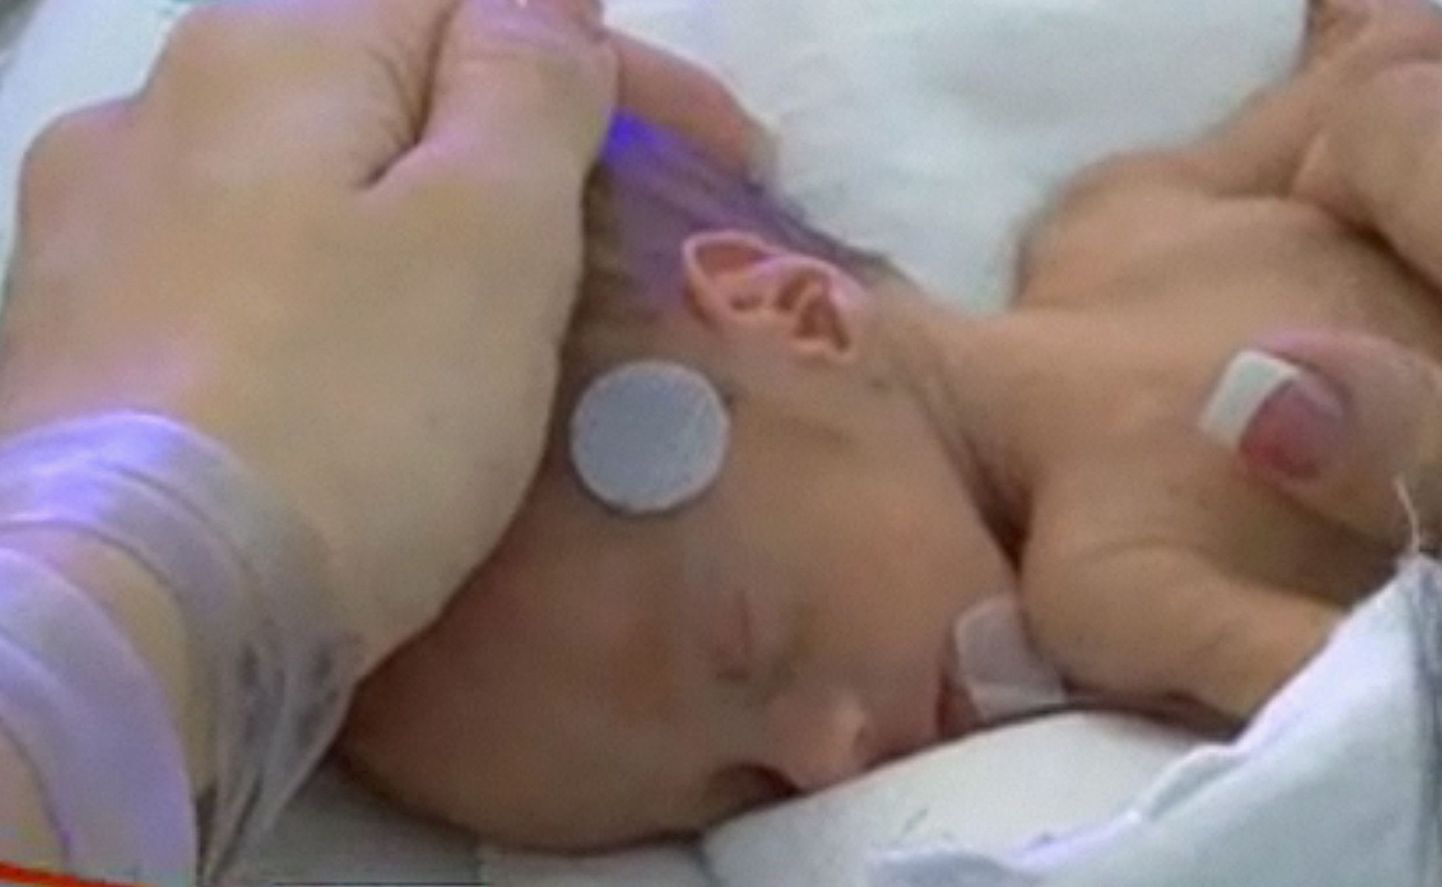 Ameeriklanna Heather Carrolli kuus last sündisid kolme minutiga